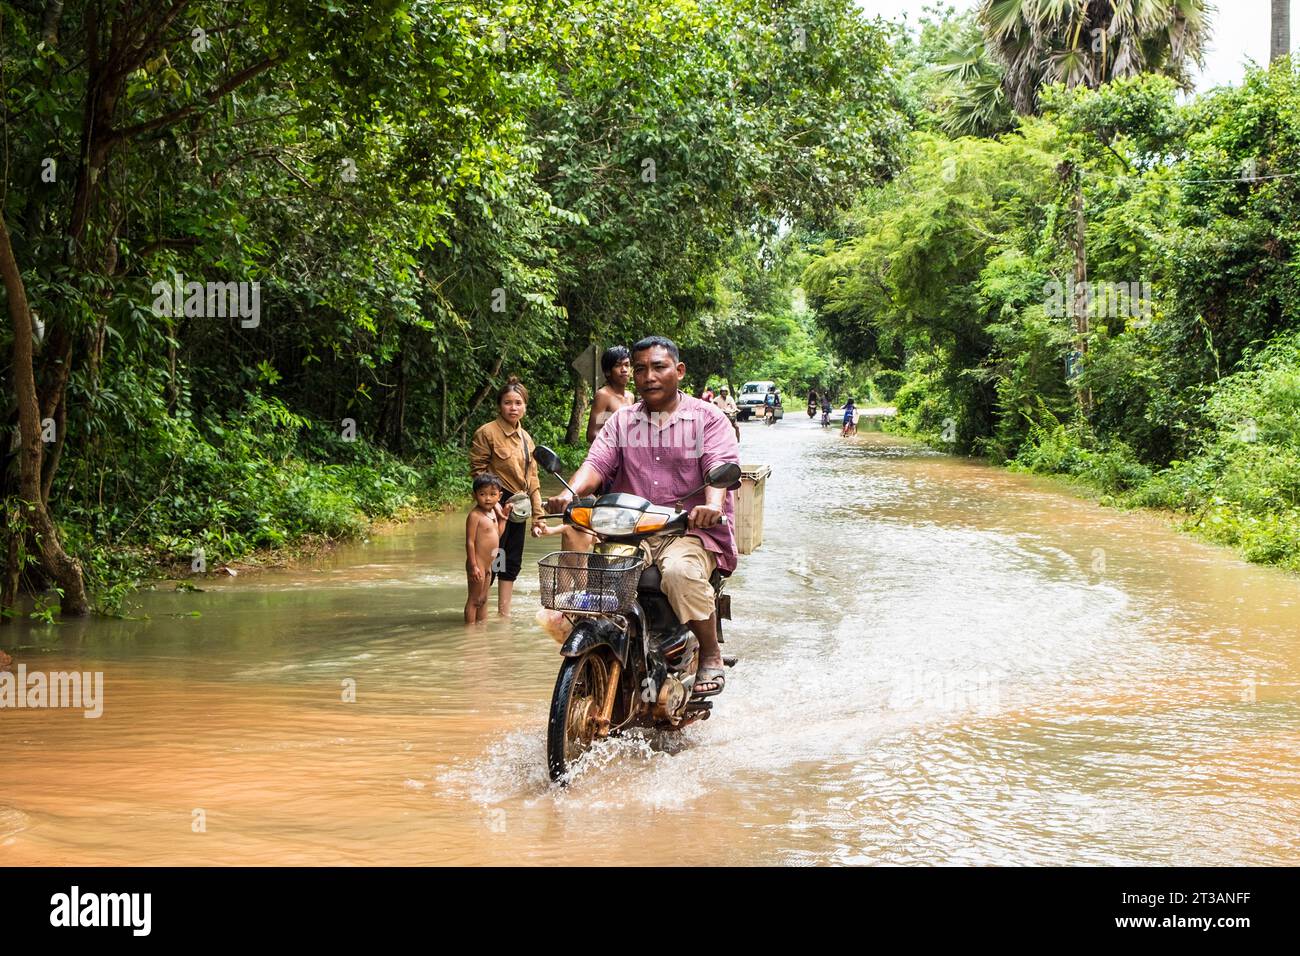 Camboya, Kampong Phluk, carretera inundada Foto de stock